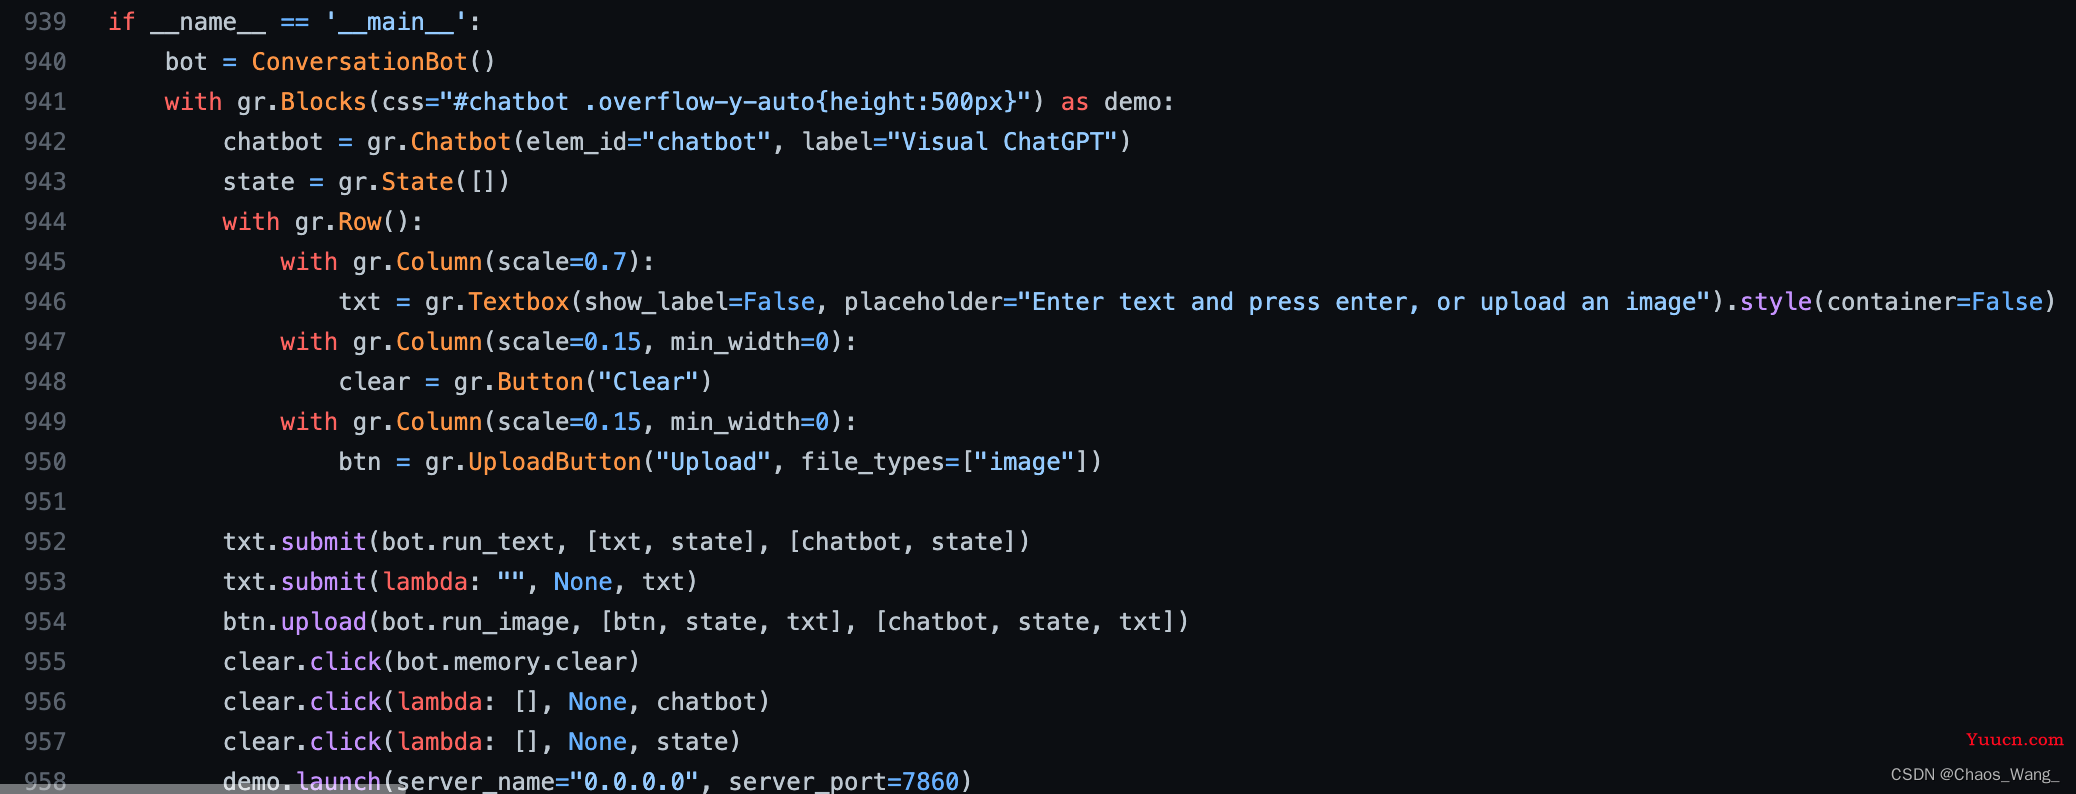 超越语言界限，ChatGPT进化之路——Visual ChatGPT